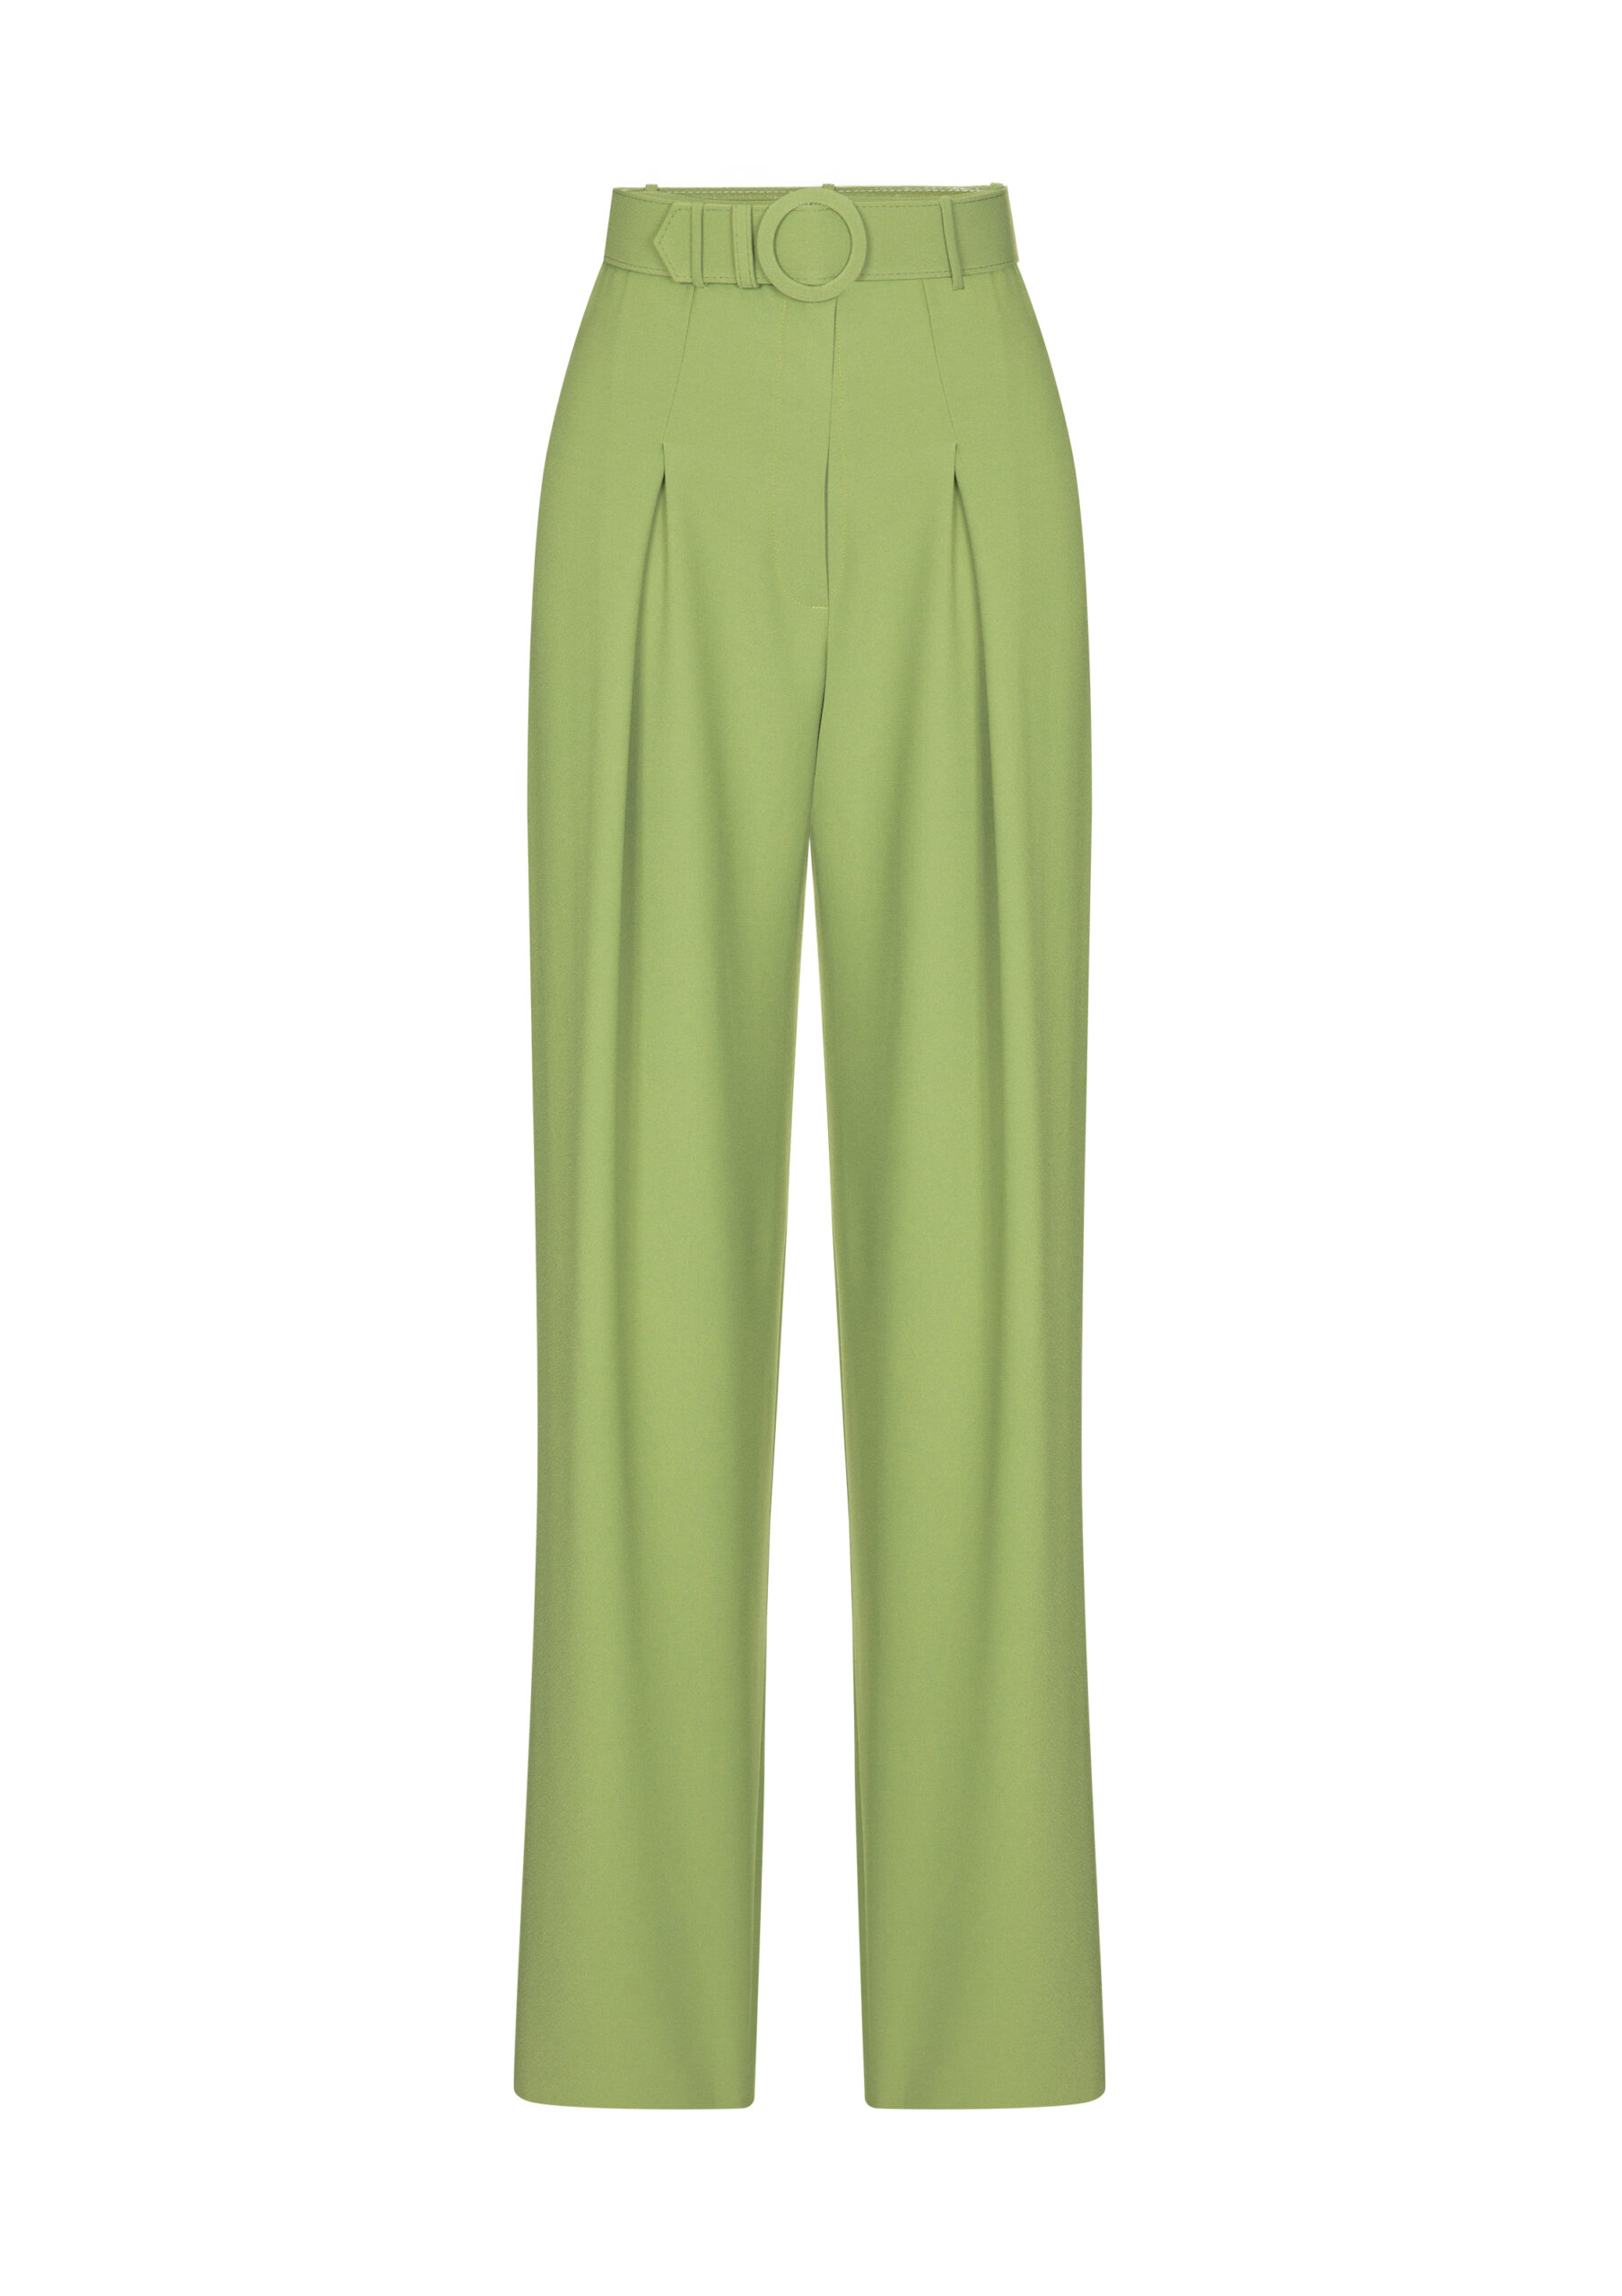 Belted Trousers Green - FILKK